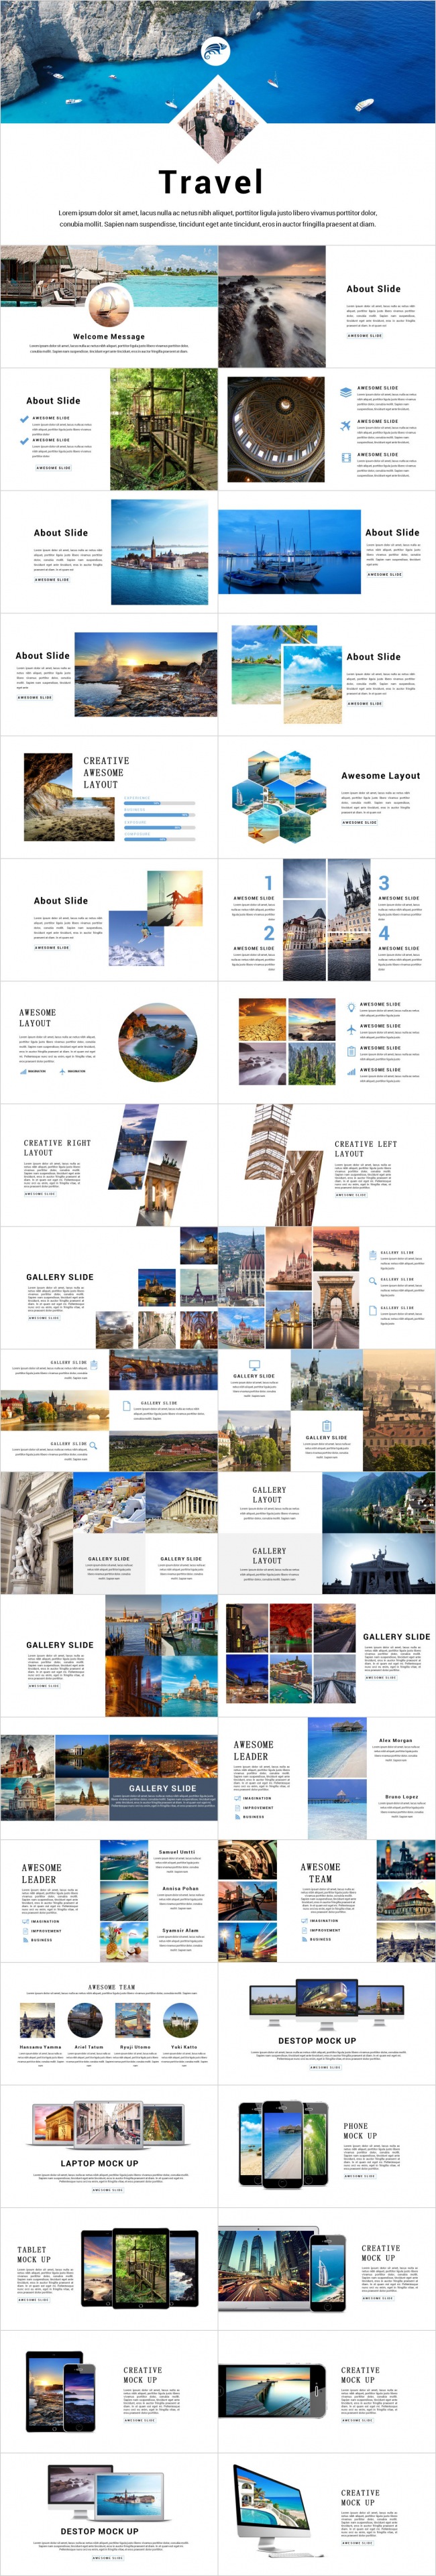 【旅行图册】旅行旅游风光景点介绍旅游公司介绍PPT模版